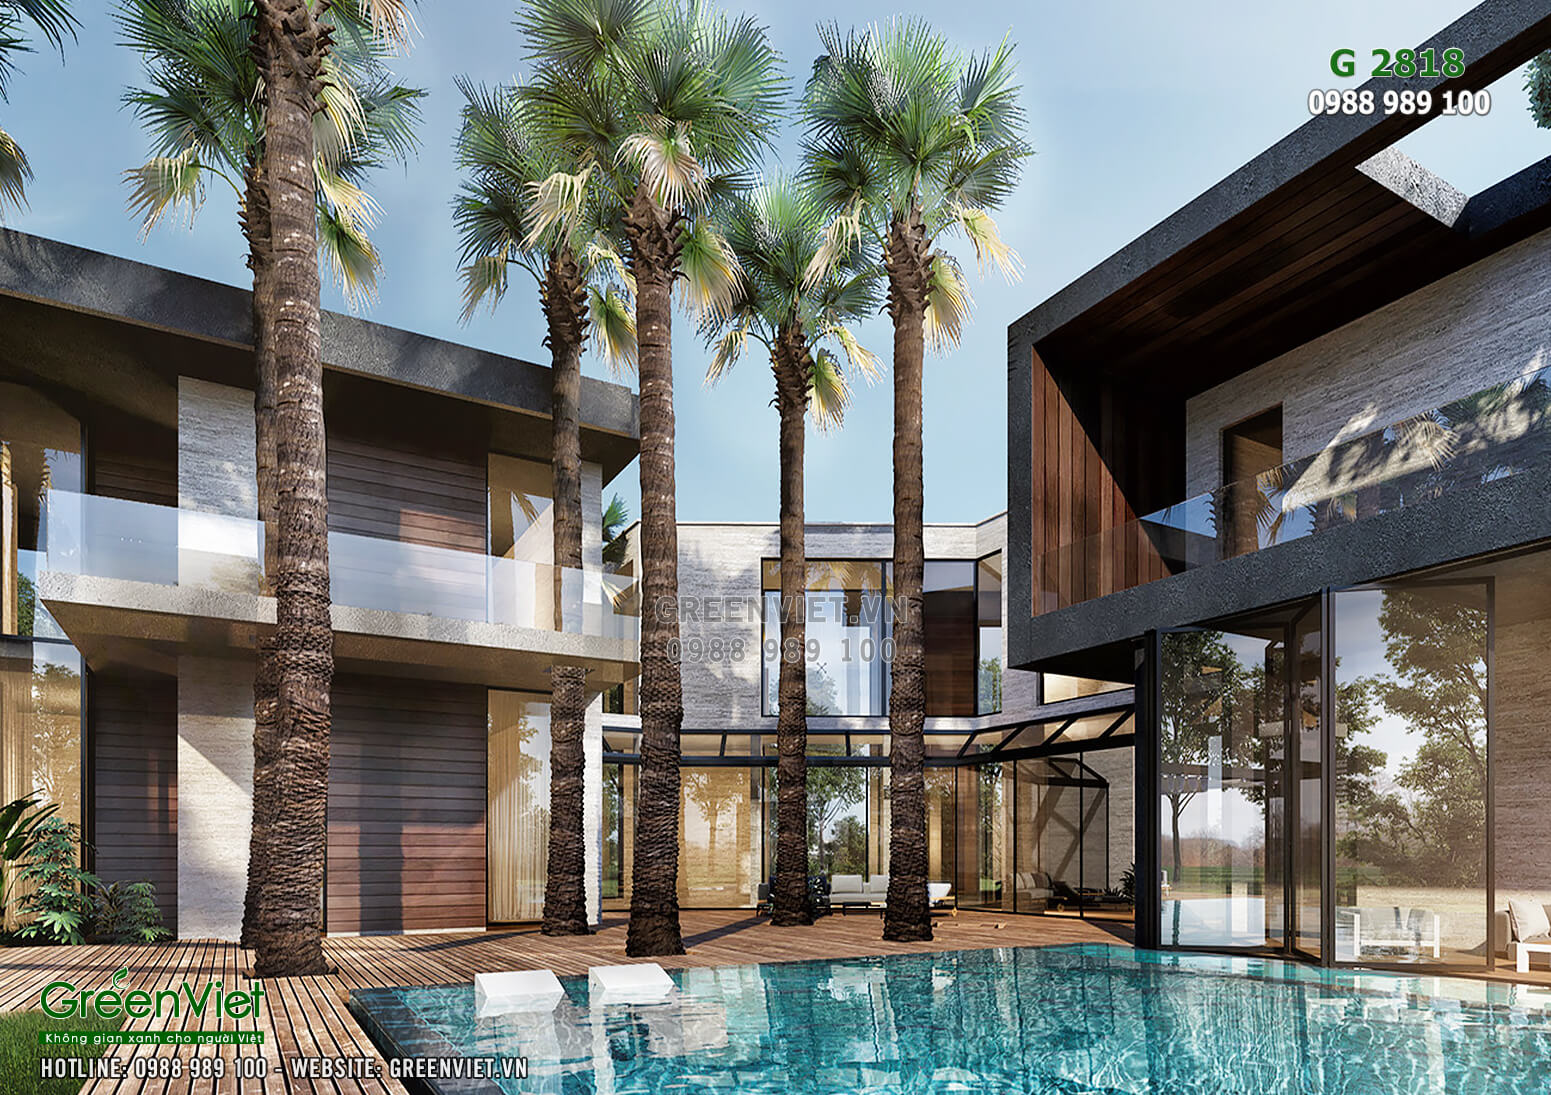 Hình ảnh: Tiểu cảnh sân vườn, bể bơi góp phần tăng giá trí của mẫu thiết kế villa nghỉ dững 2 tầng hiện đại